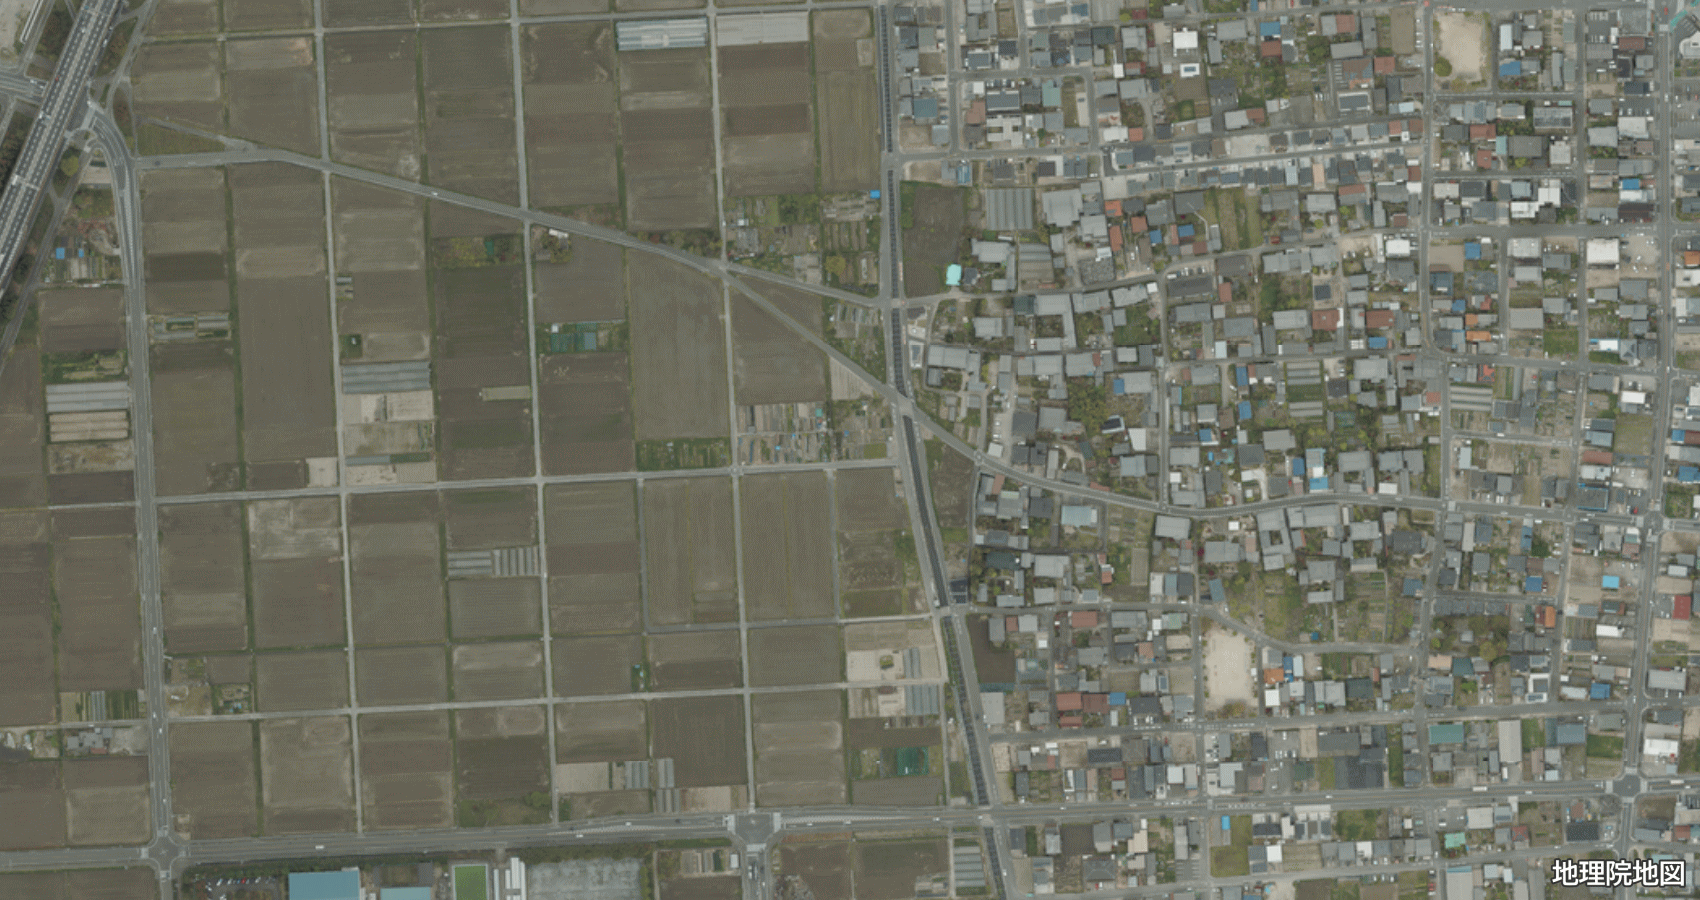 清須市上条 衛星地図 2017